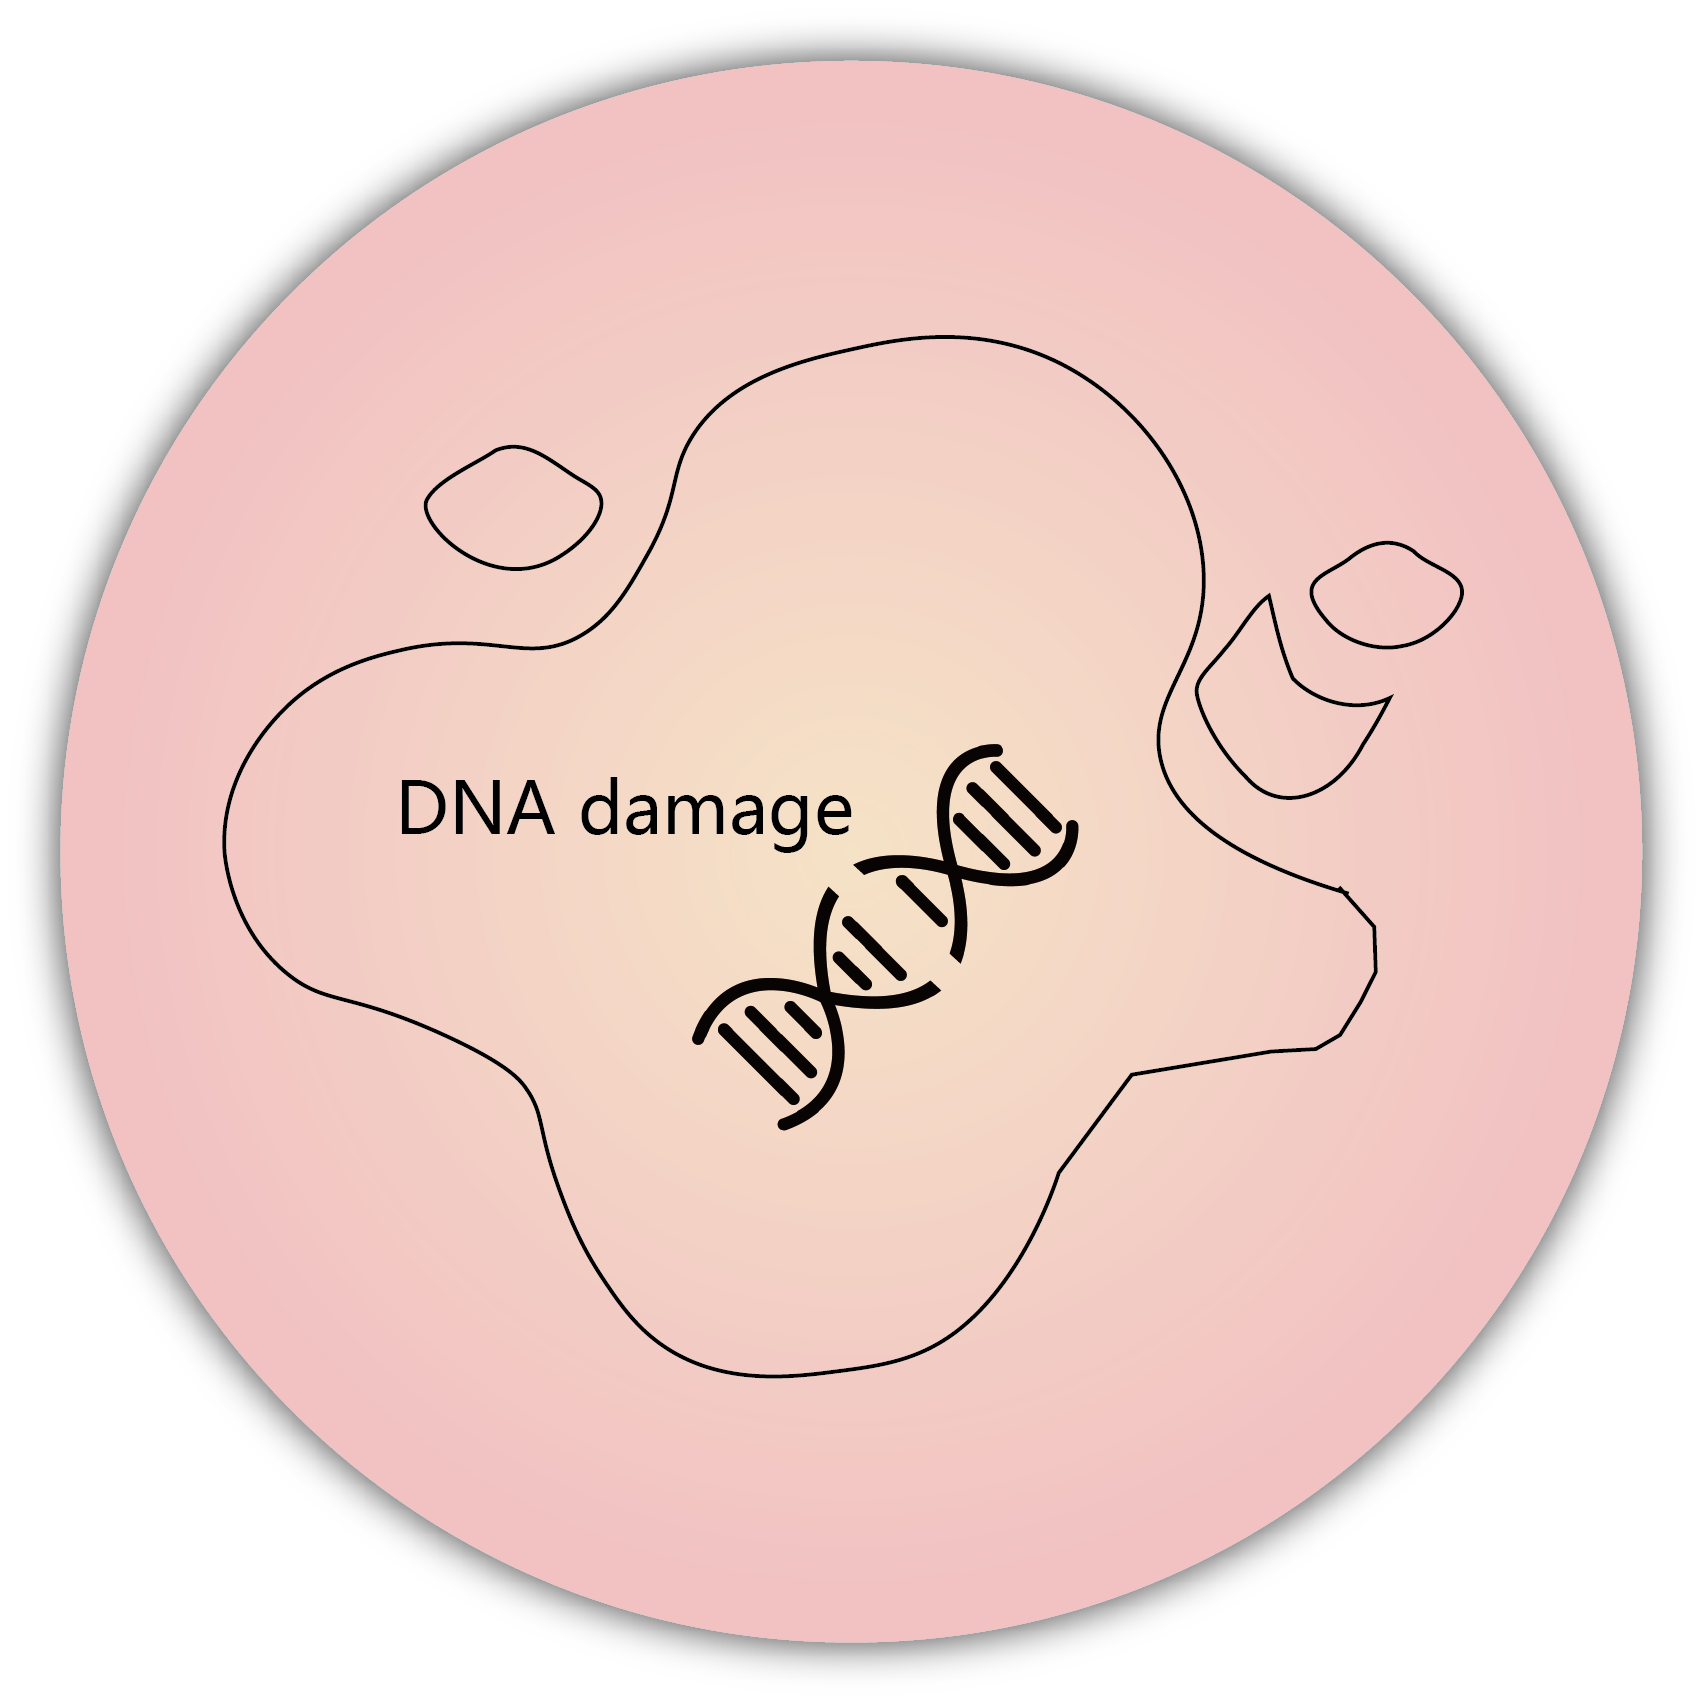 細胞凋亡 apoptosis - DNA damage